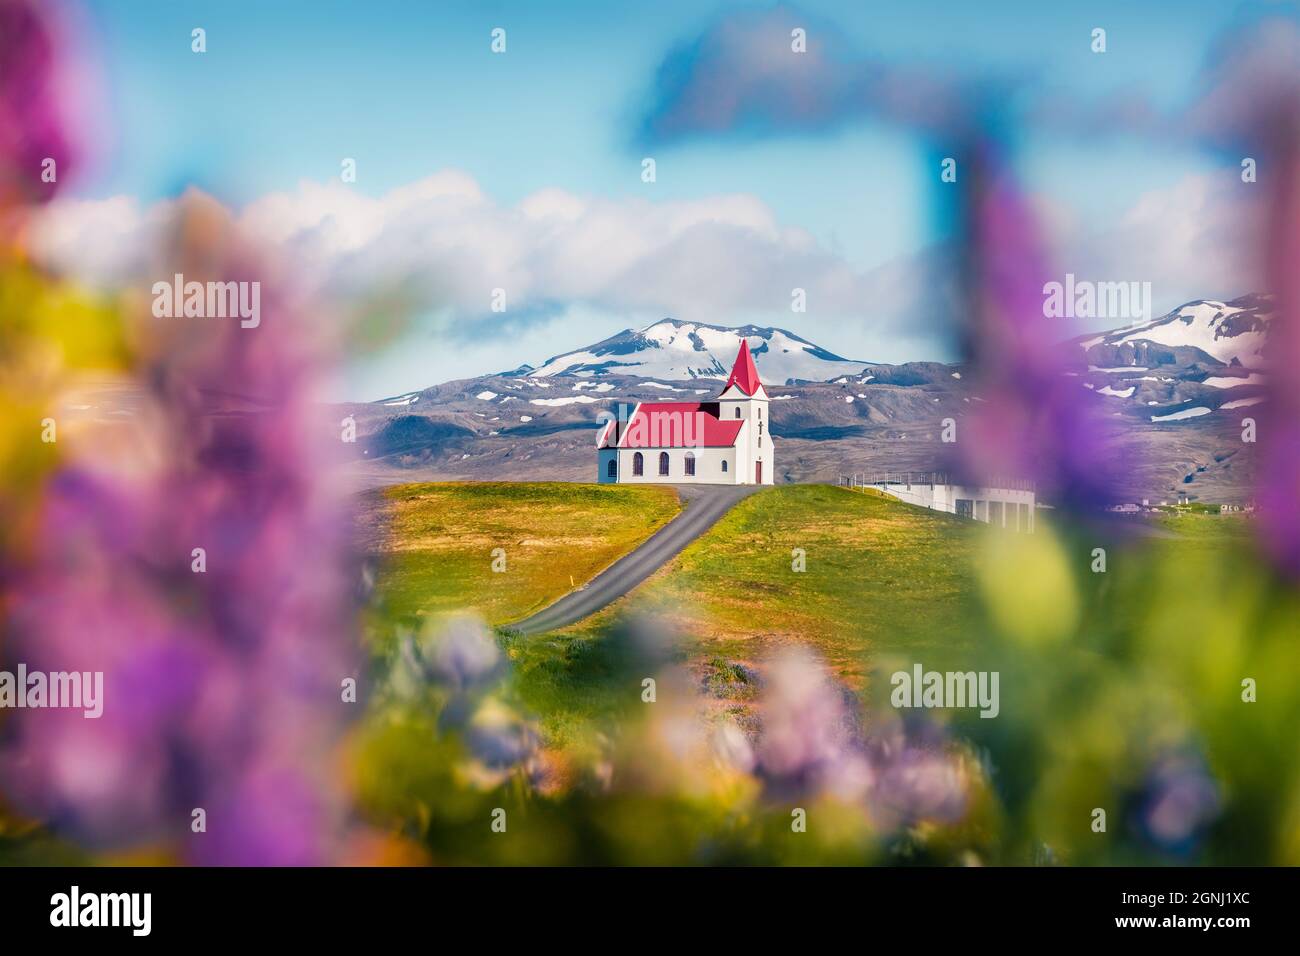 Belle vue du matin de l'église emblématique de glace - Ingjaldsholl. Scène estivale colorée de l'Islande avec champ de fleurs lupin et montagne enneigée Banque D'Images